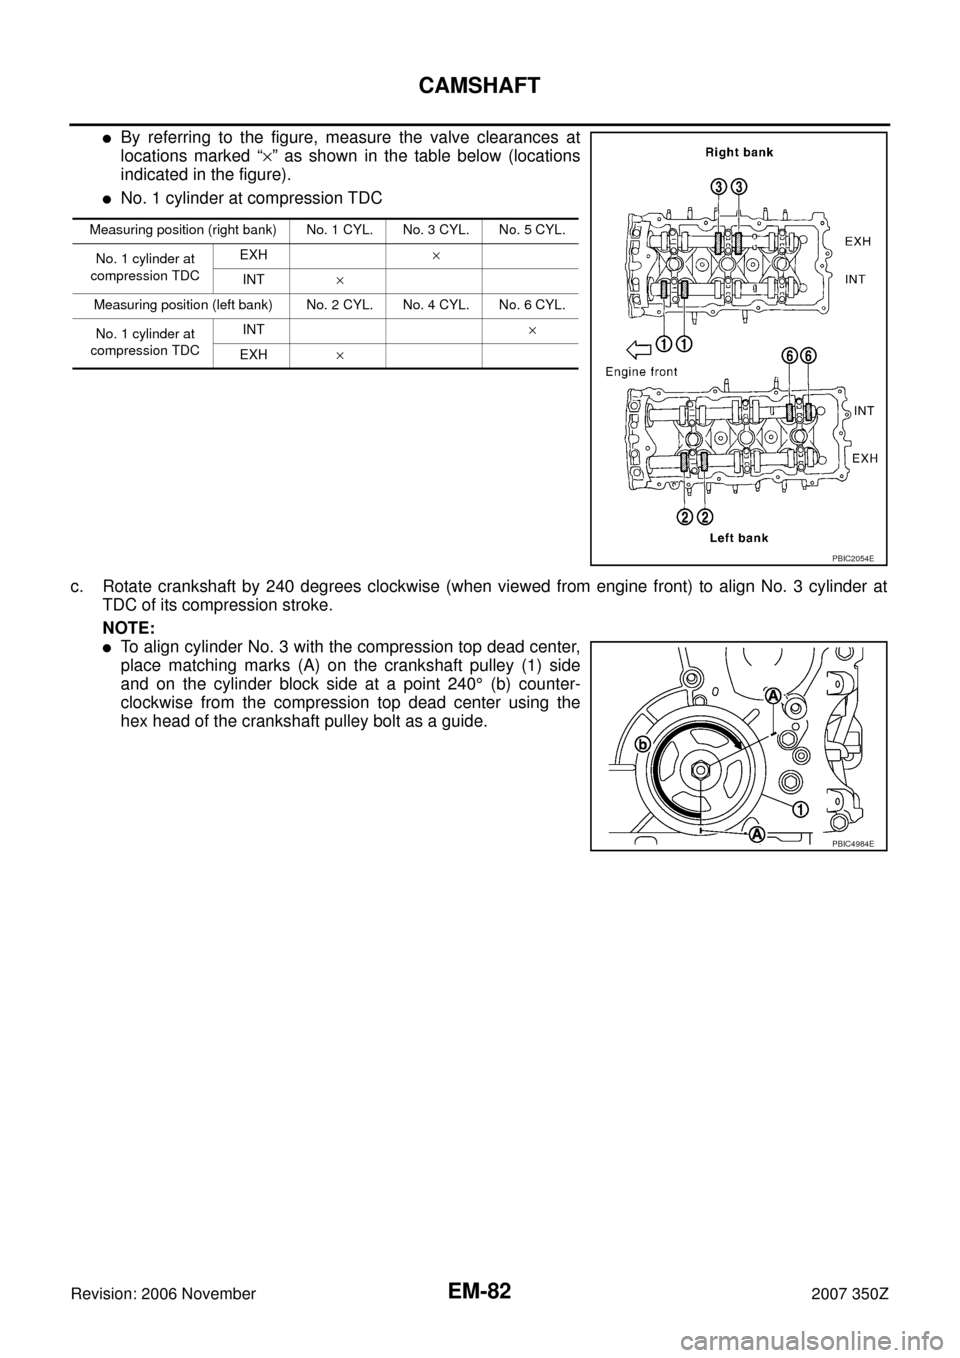 NISSAN 350Z 2007 Z33 Engine Mechanical Workshop Manual EM-82
CAMSHAFT
Revision: 2006 November2007 350Z
By referring to the figure, measure the valve clearances at
locations marked “×” as shown in the table below (locations
indicated in the figure).
